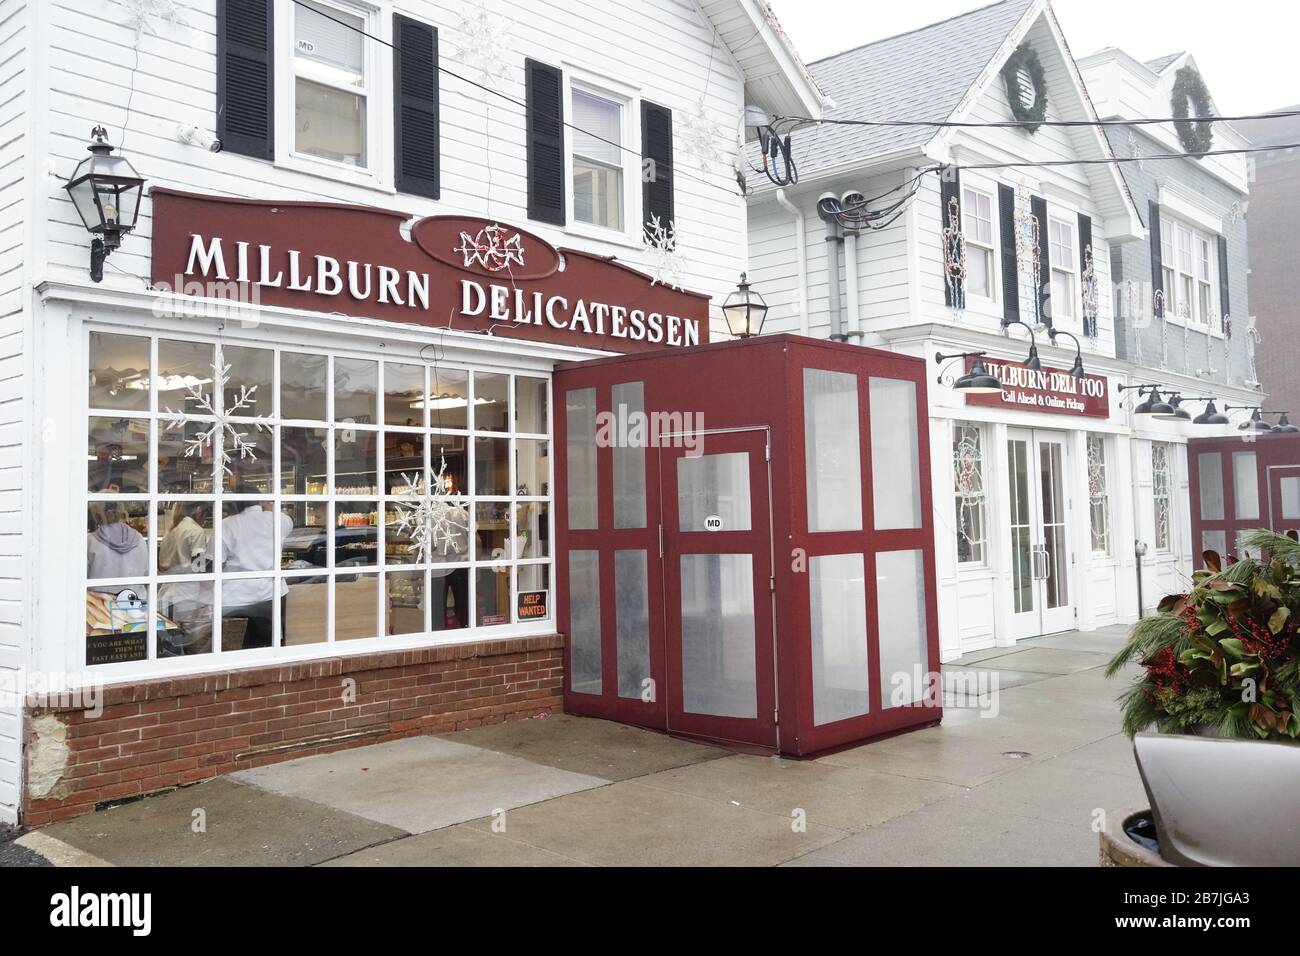 Millburn Delicatessen 328 Millburn Avenue, Millburn, NJ 07041 favori local, ouvert depuis 1946. Sandwich Best Deli dans le Garden State. Banque D'Images